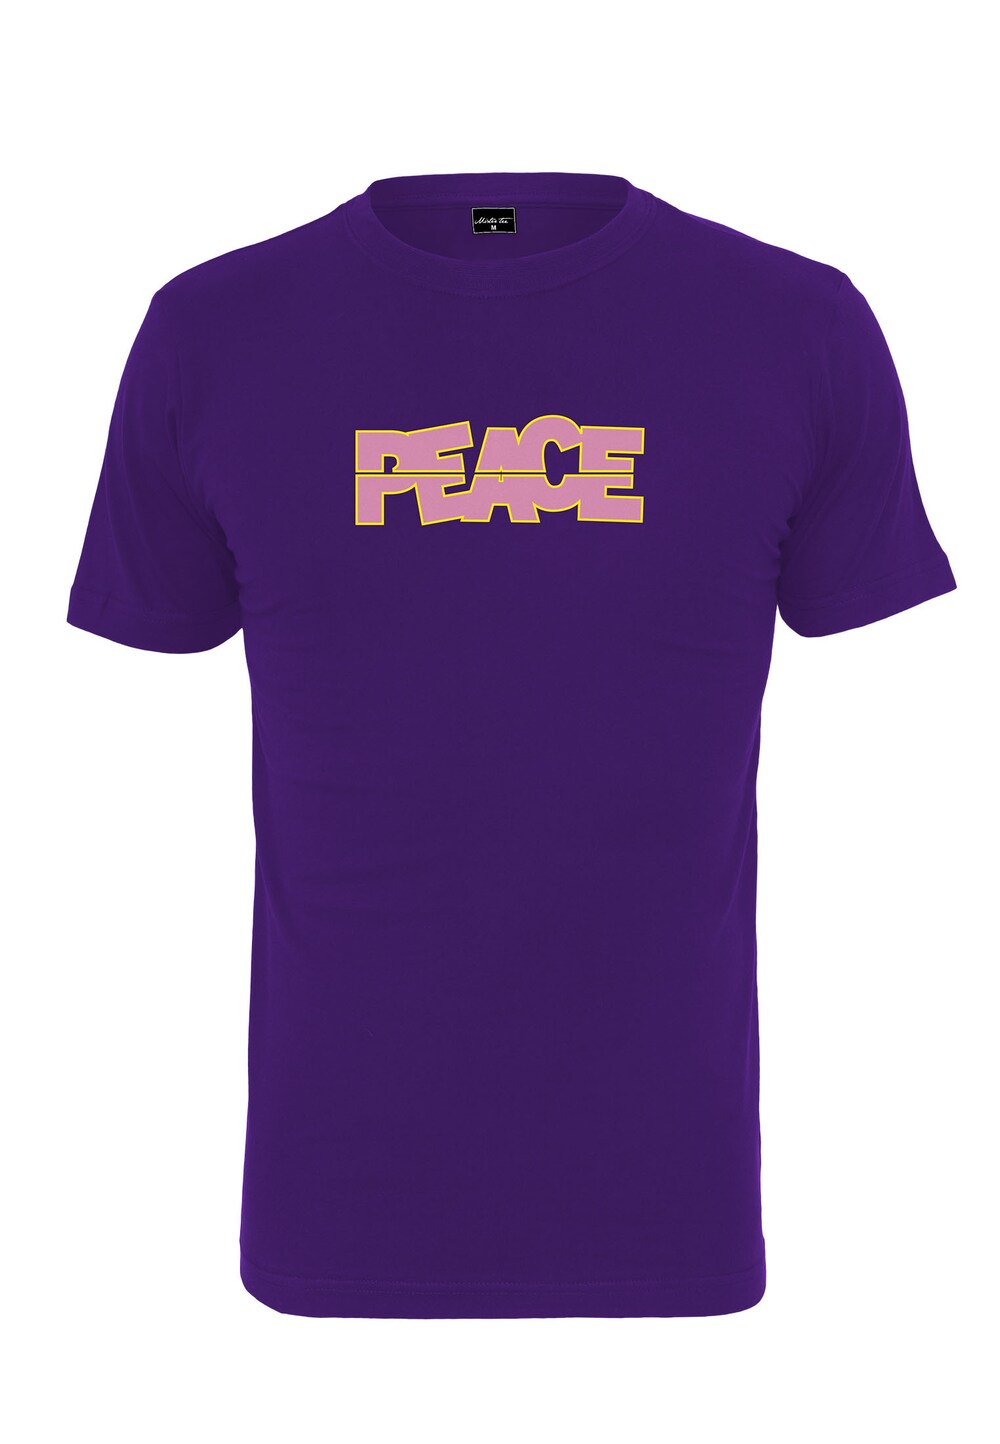 Рубашка Merchcode Ladies Peace Tee, фиолетовый